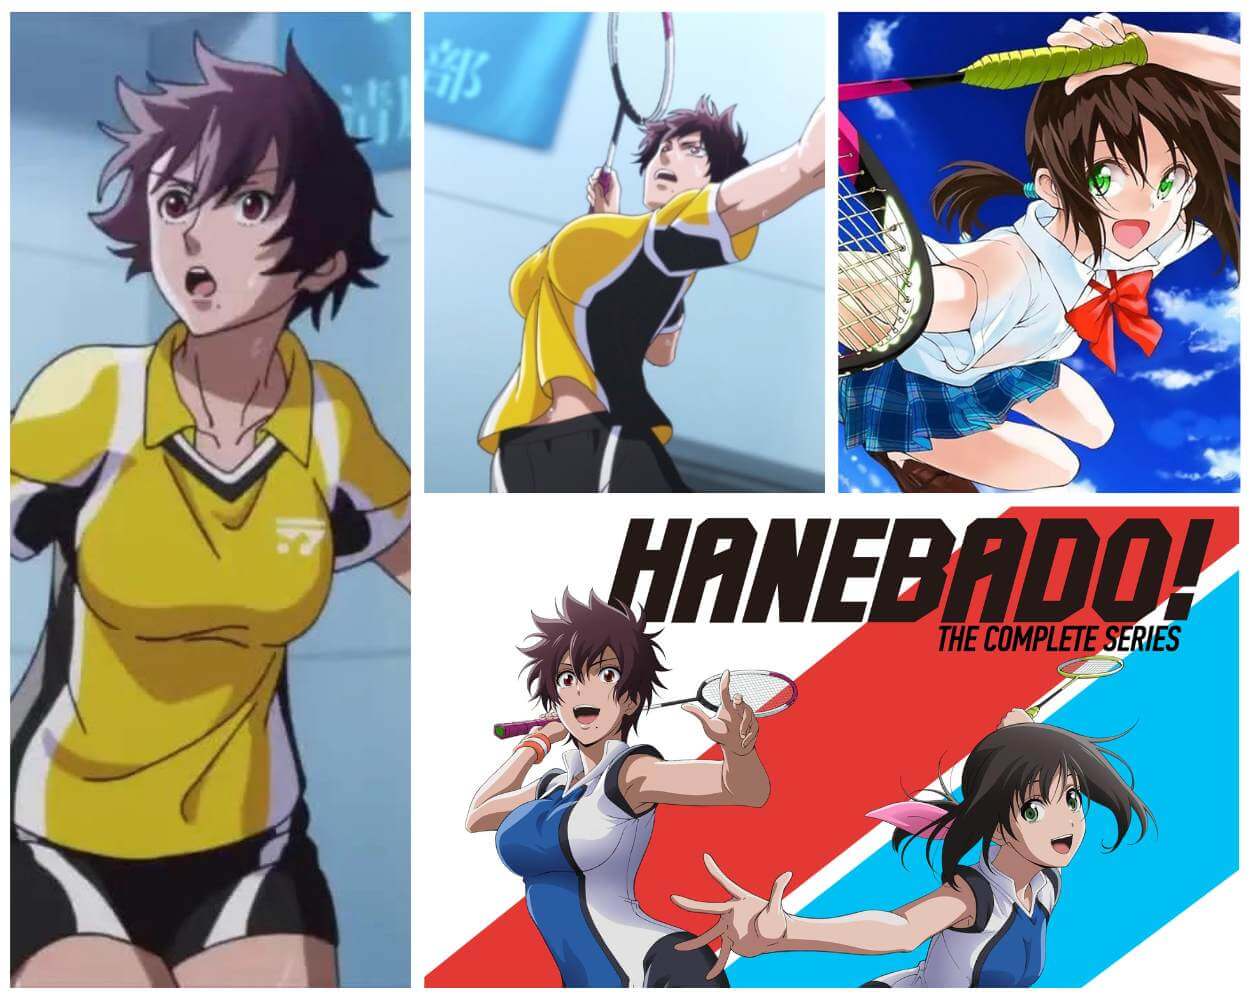 Badminton Anime - Hanebado!